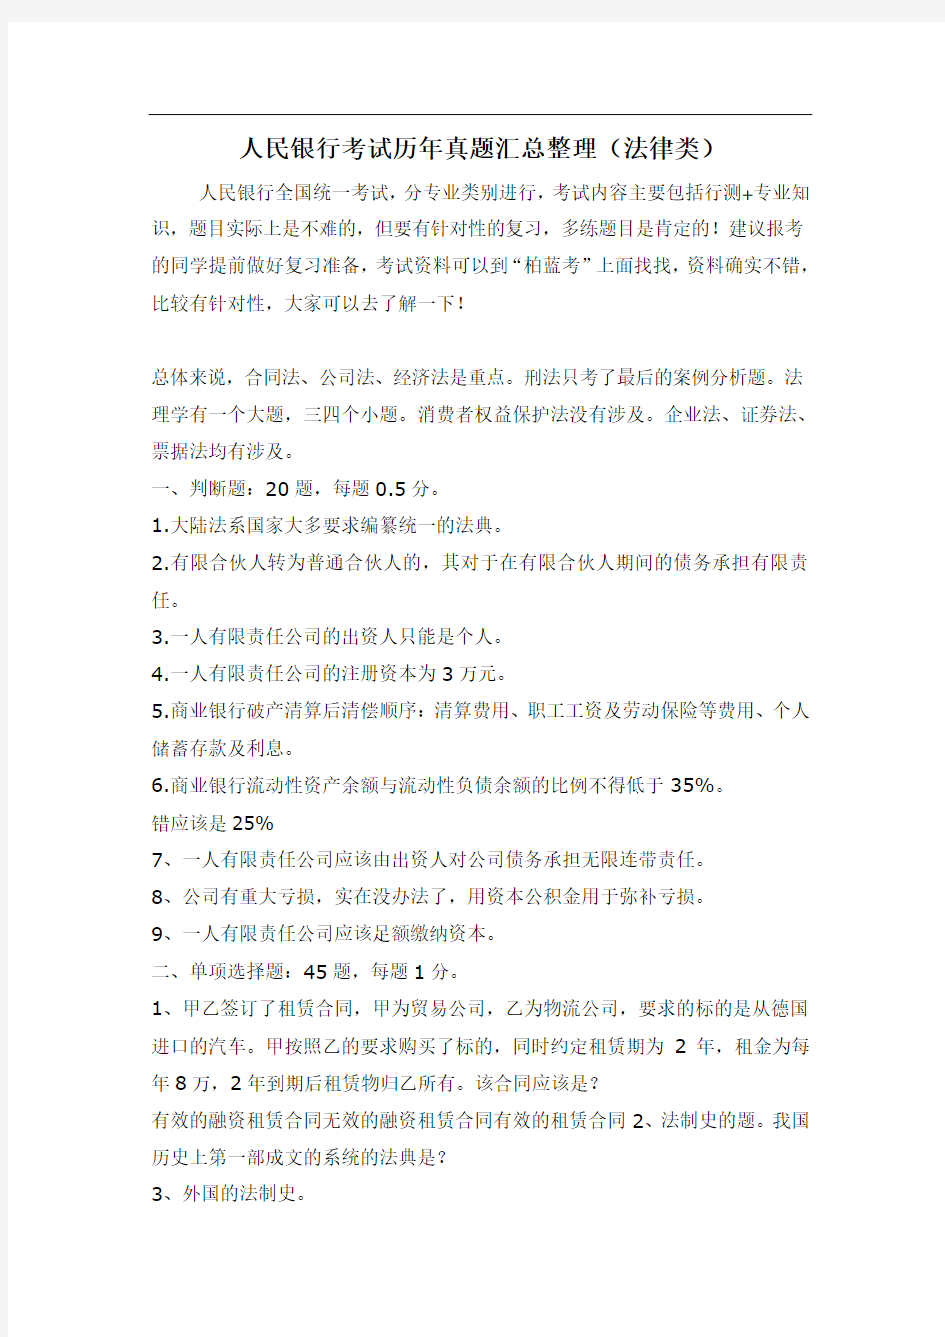 中国人民银行社会招聘考试内容试卷历年真题(法律类)